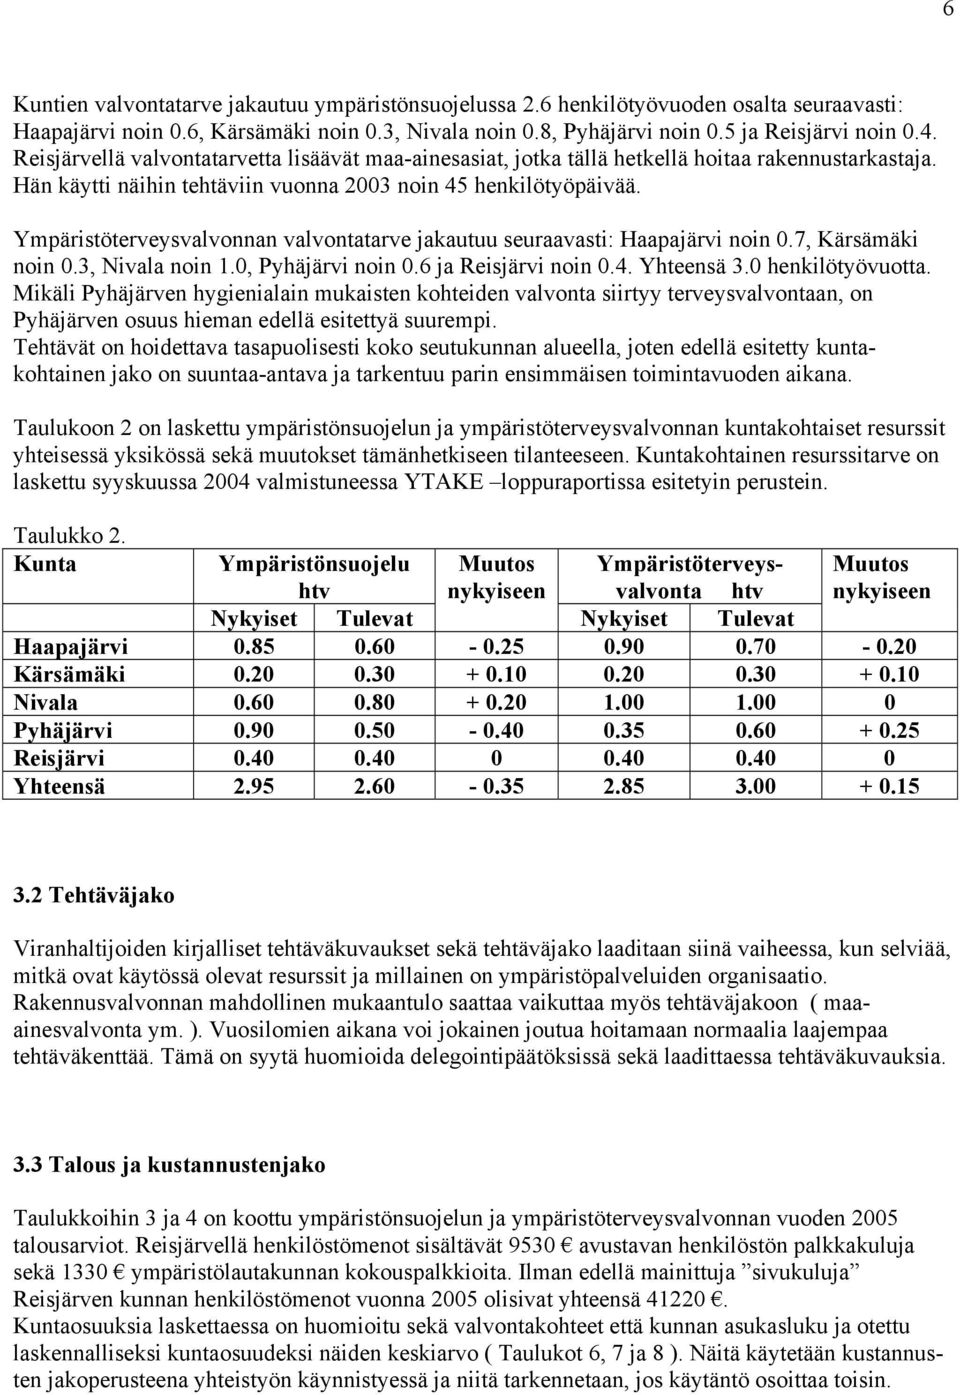 Ympäristöterveysvalvonnan valvontatarve jakautuu seuraavasti: Haapajärvi noin 0.7, Kärsämäki noin 0.3, Nivala noin 1.0, Pyhäjärvi noin 0.6 ja Reisjärvi noin 0.4. Yhteensä 3.0 henkilötyövuotta.